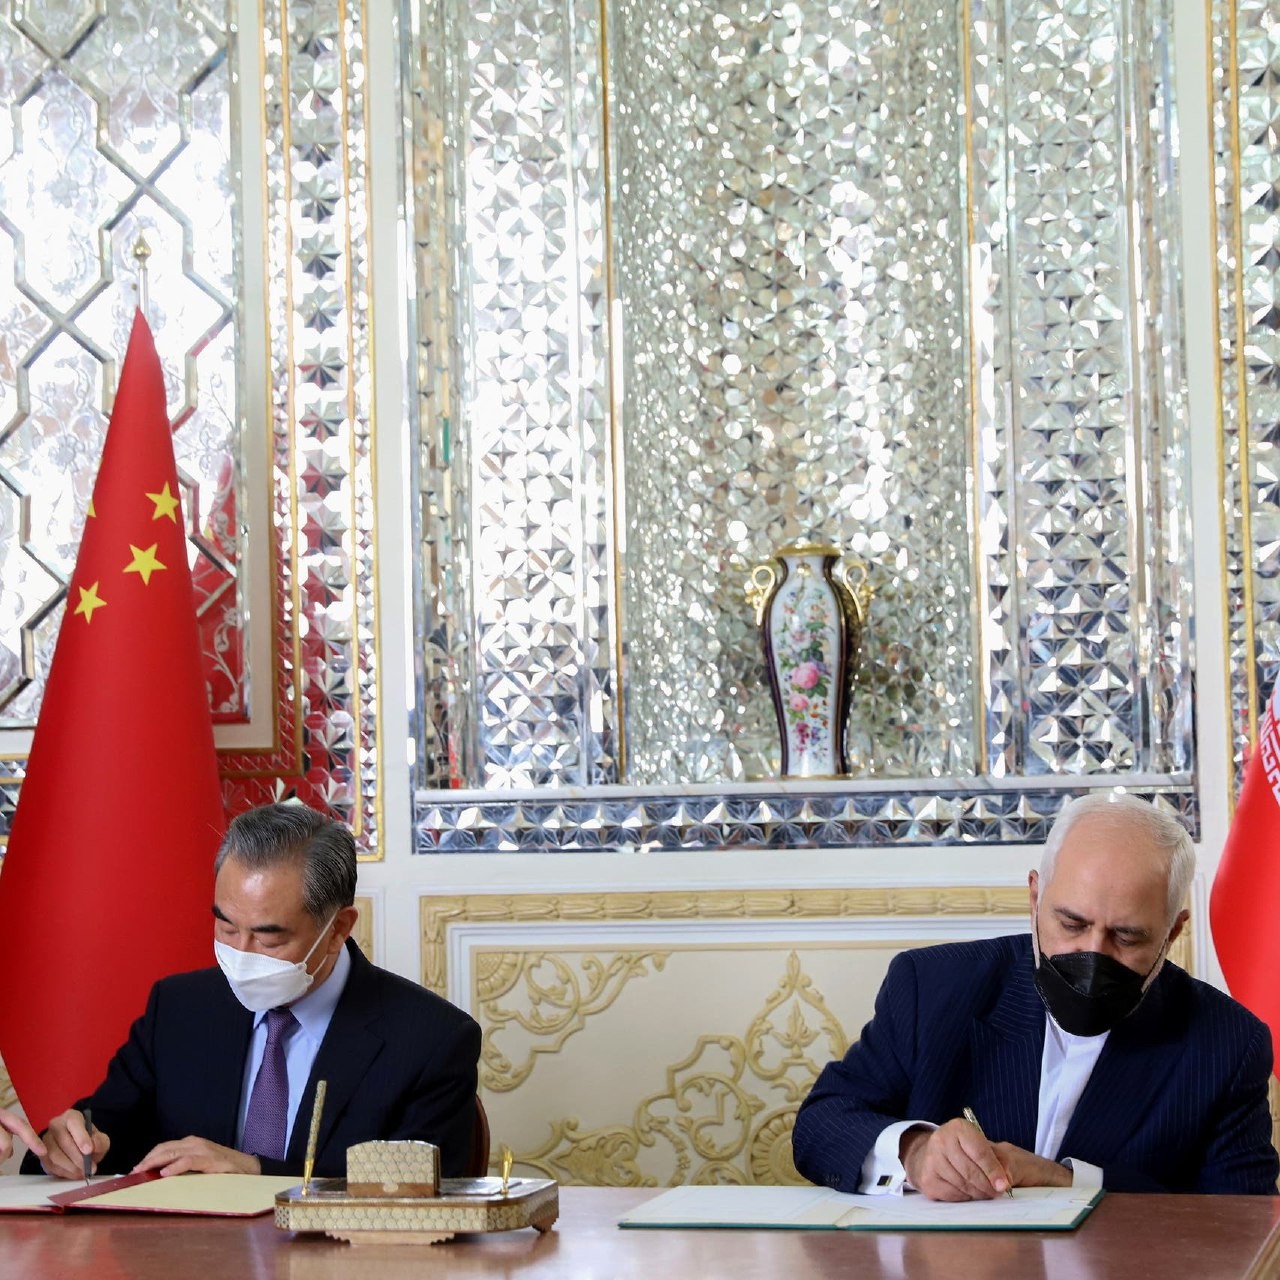 اتفاقية التعاون الاستراتيجي بين إيران والصين تتضمن بنودا سرية